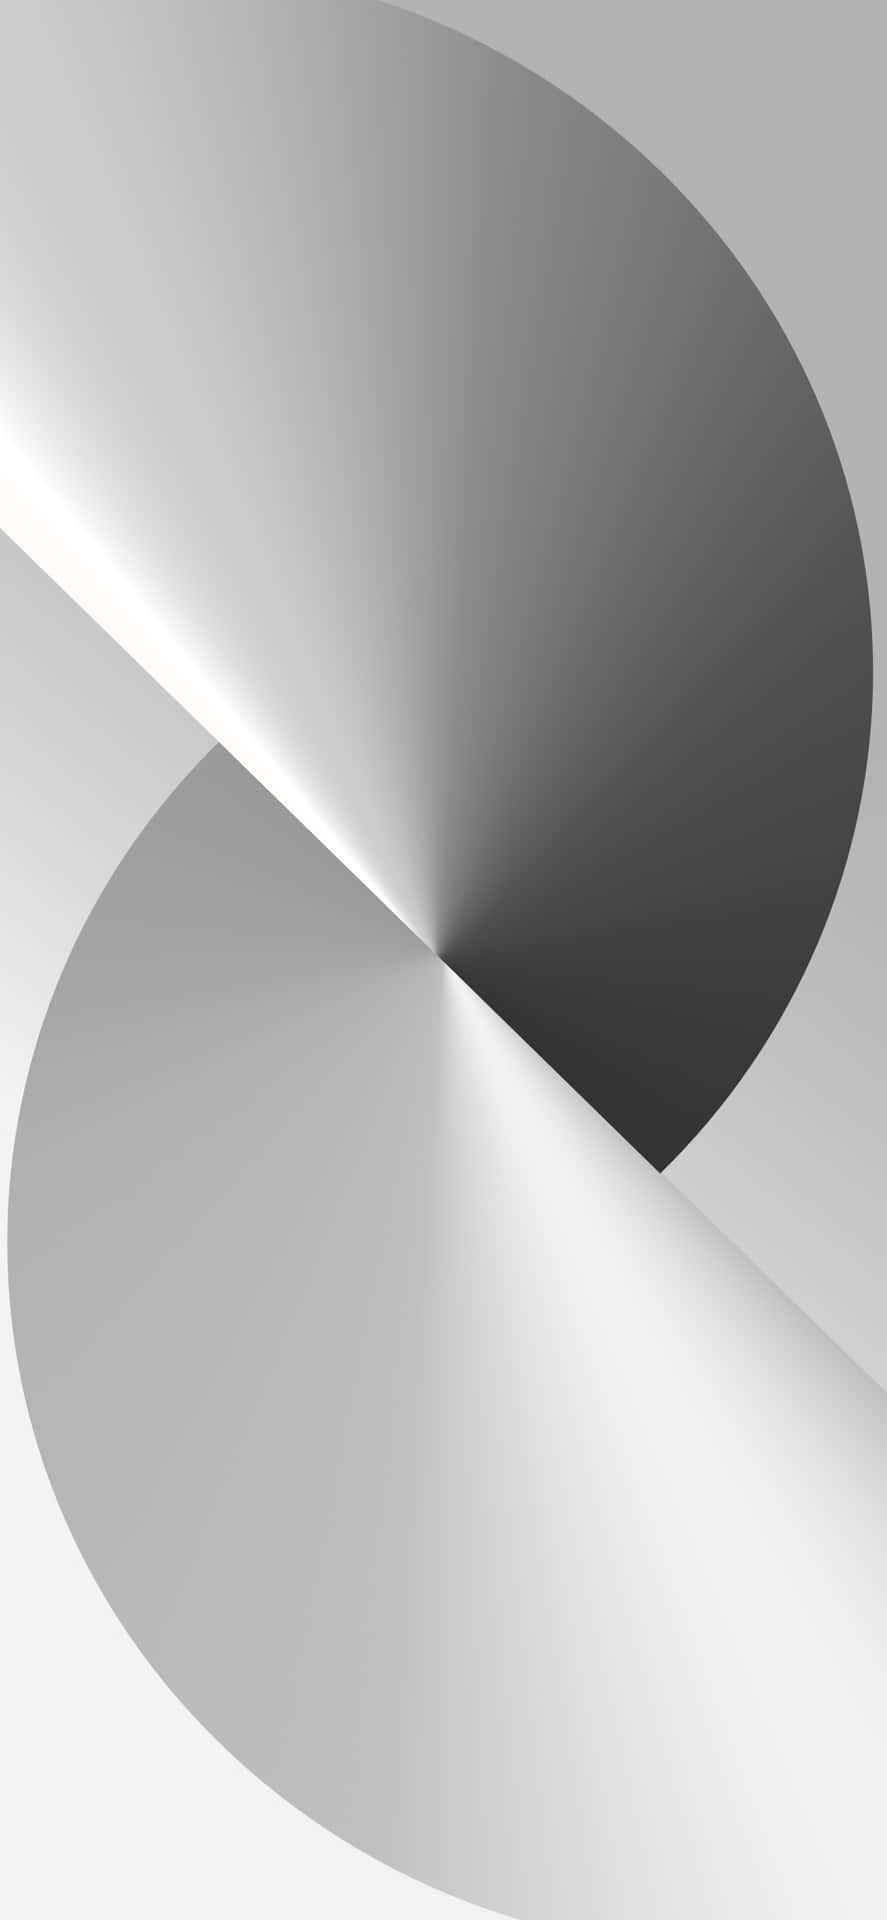 Einabstraktes Design In Weiß Und Grau Mit Einer Kreisförmigen Form Wallpaper